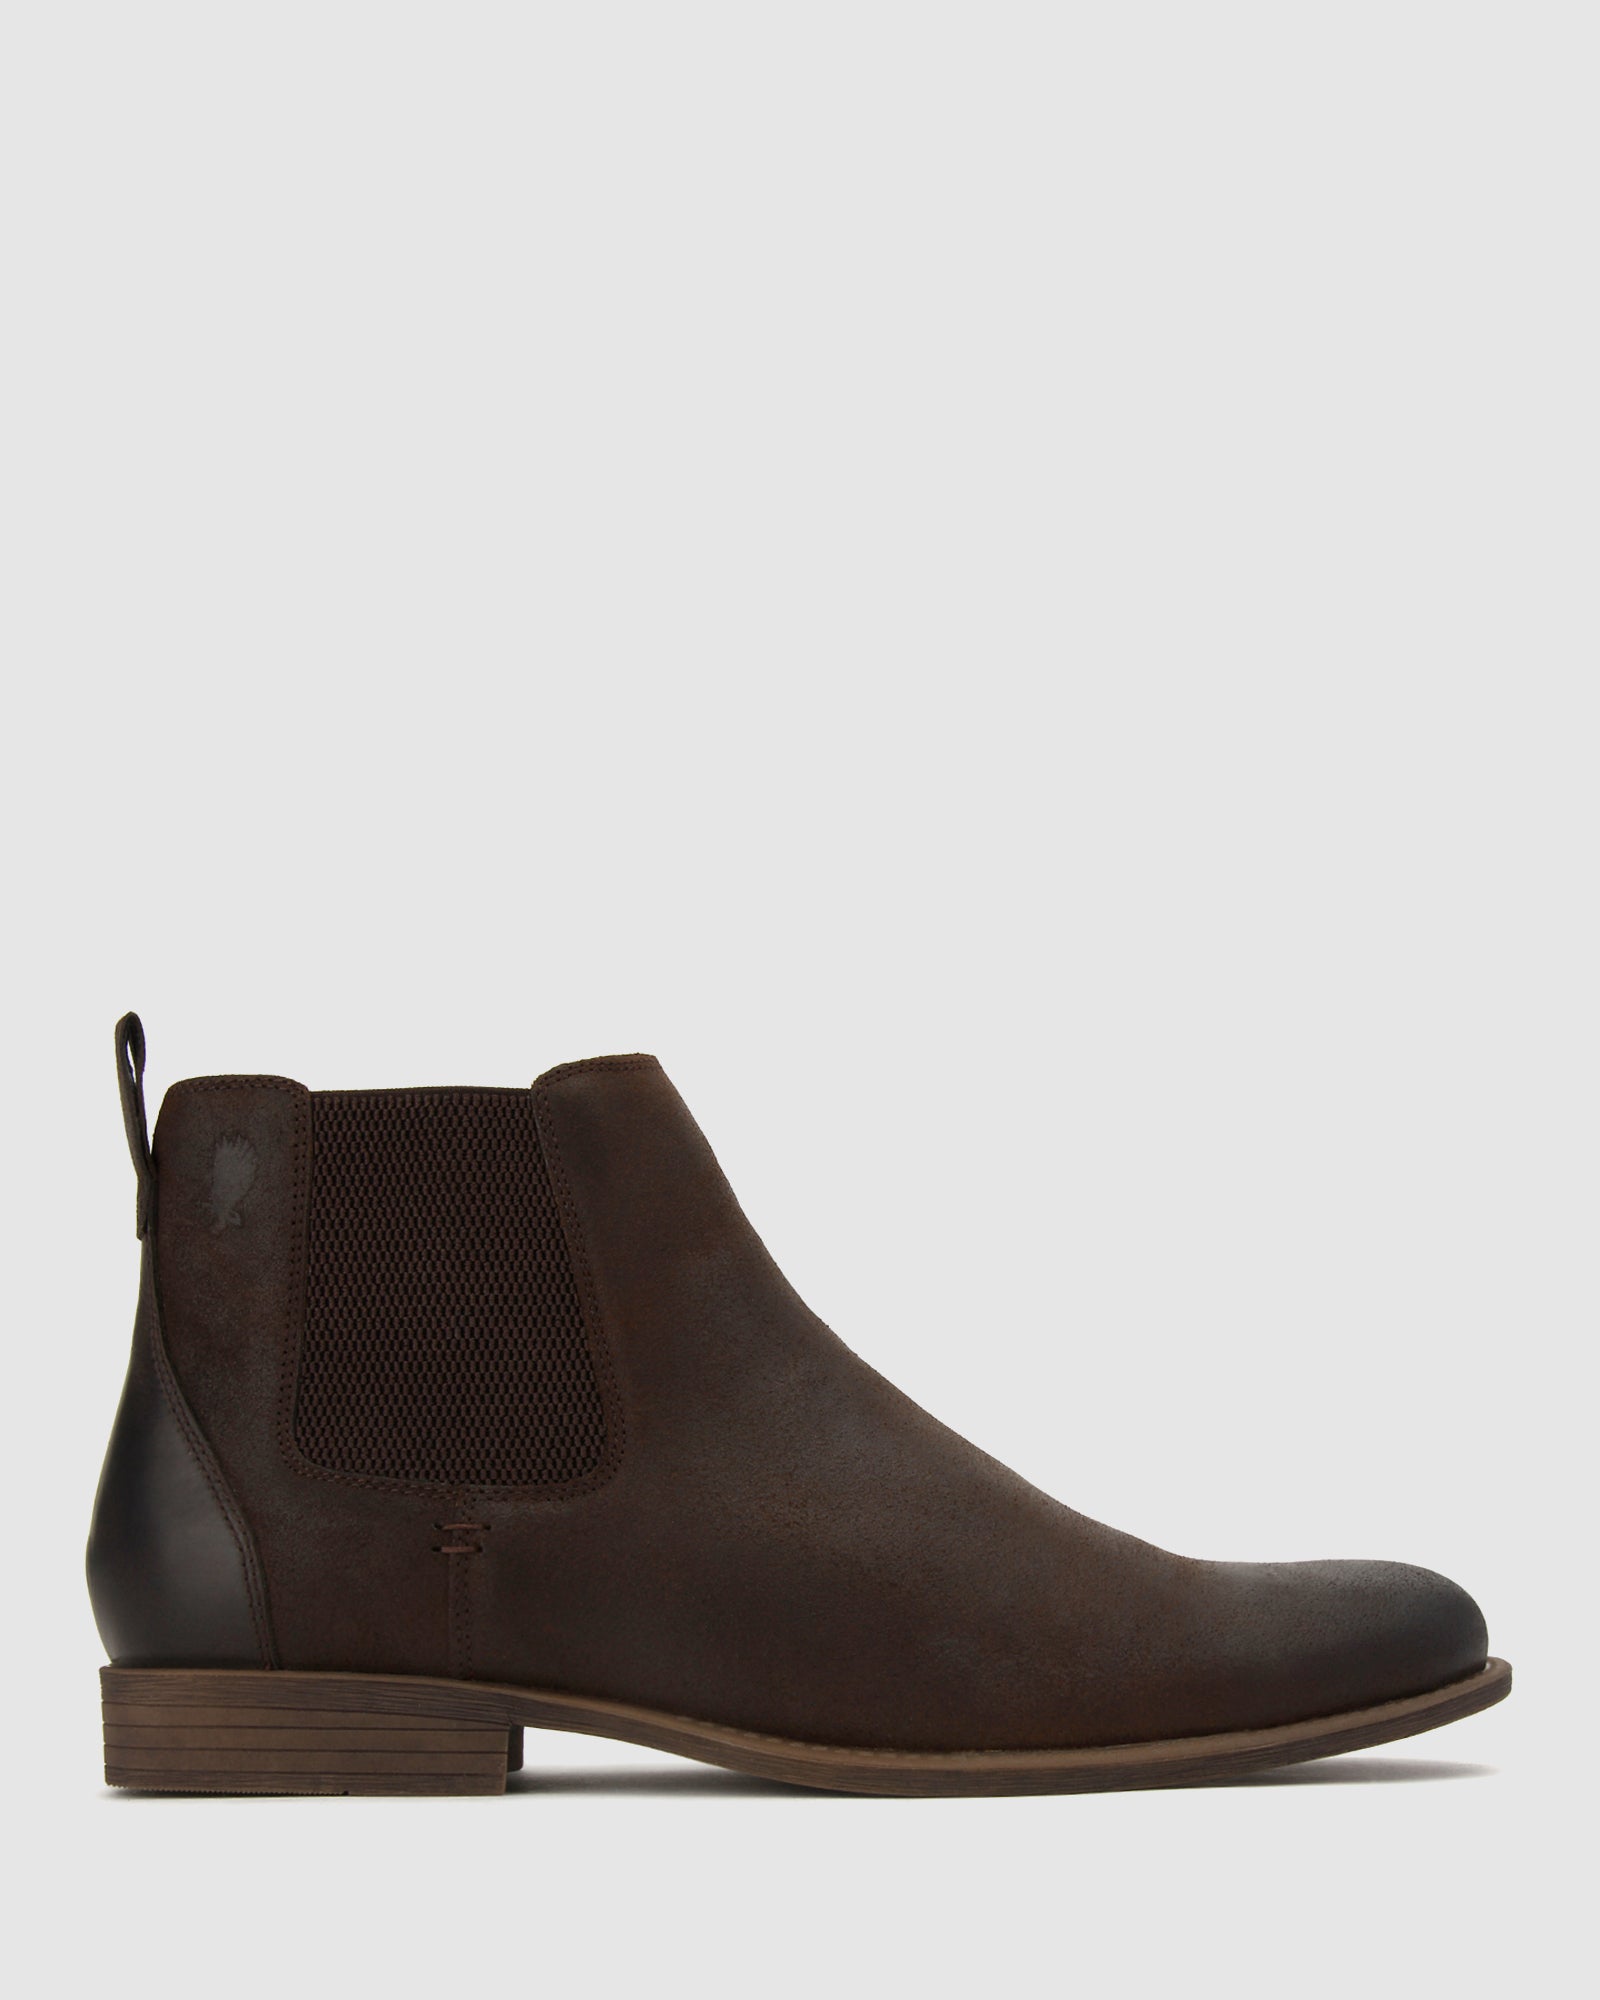 Buy FLIP Leather Chelsea Boots by Dakota online - Betts